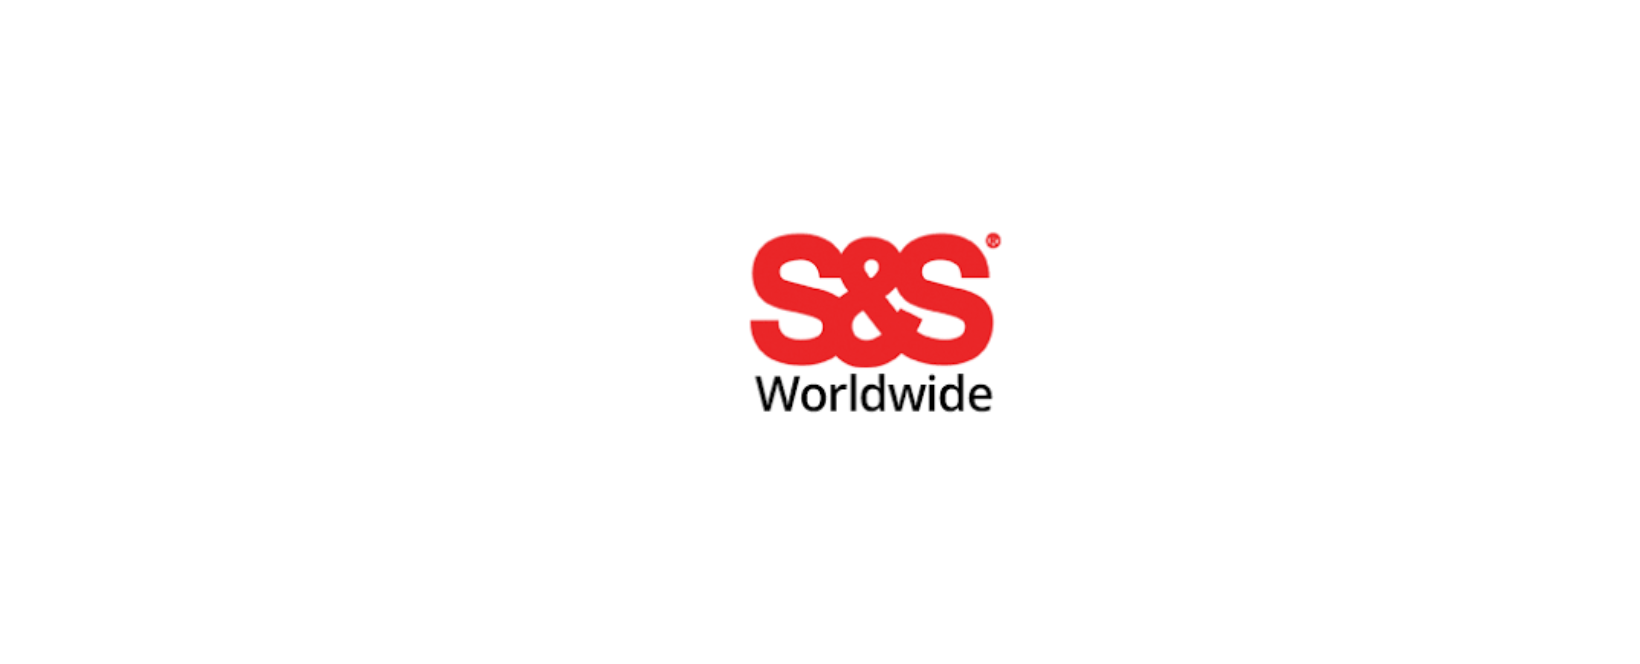 S&S Worldwide Discount Code 2023